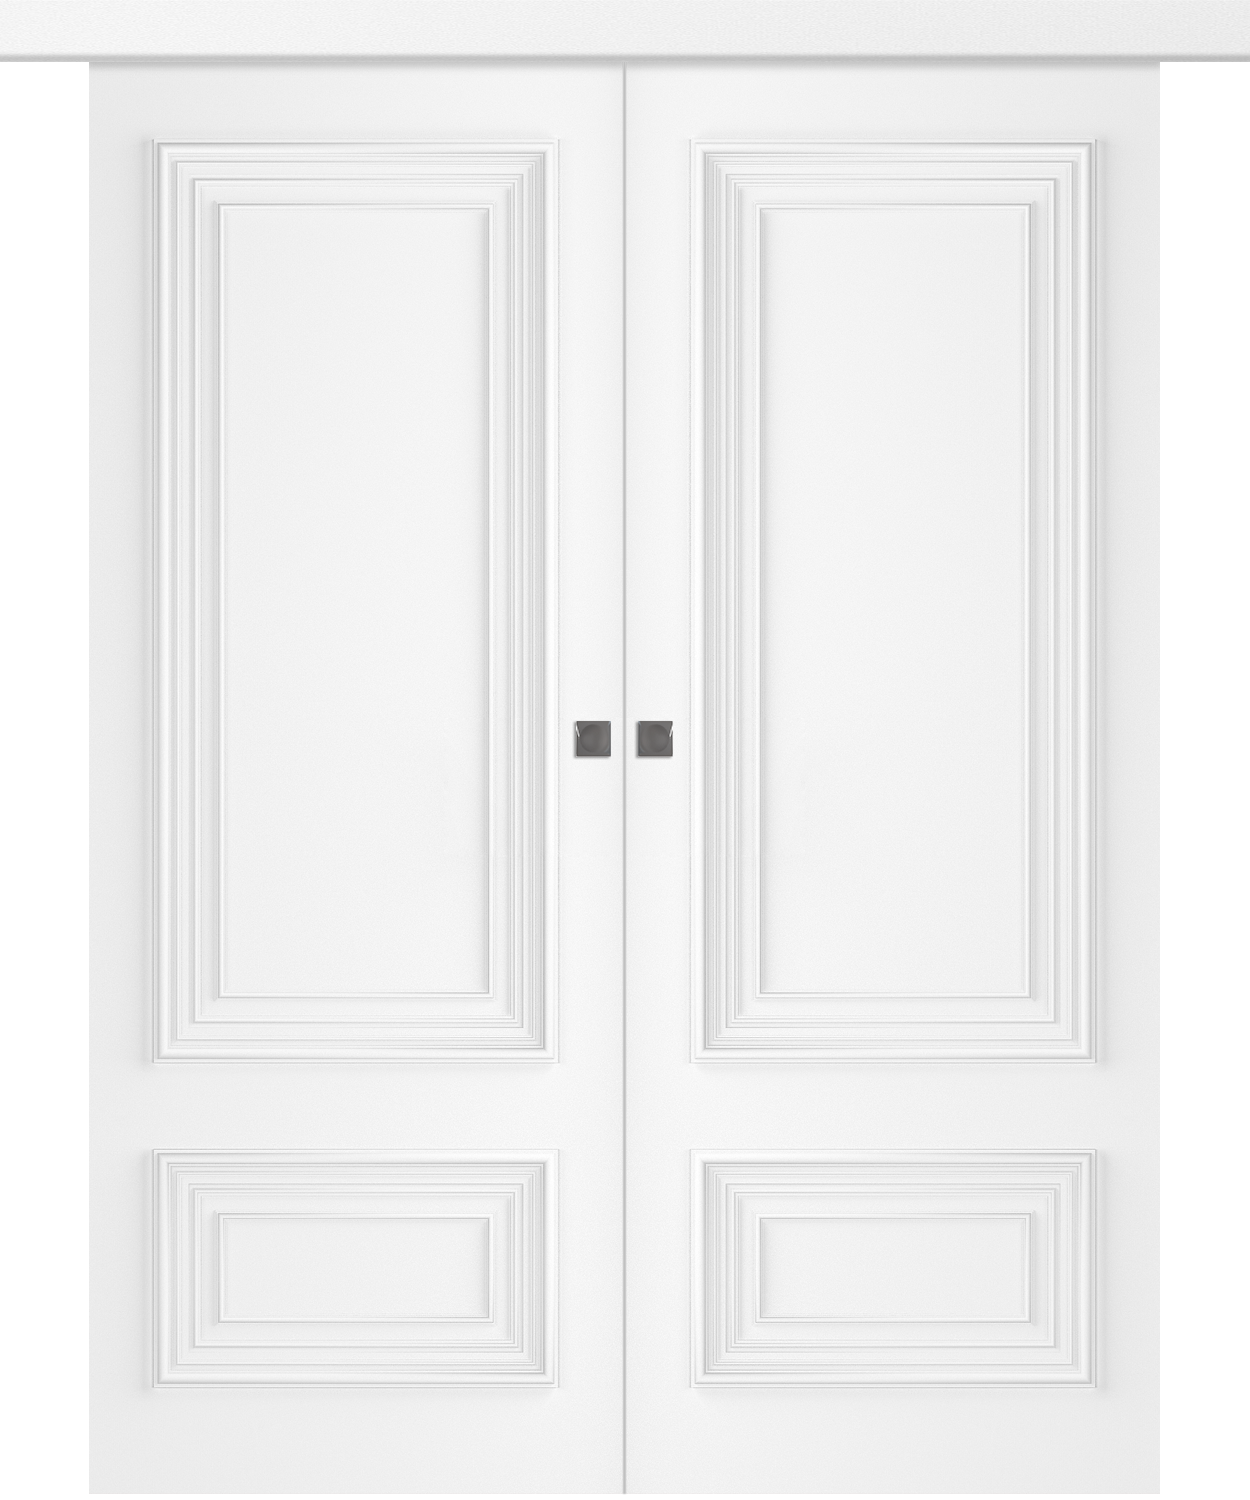 Дверное Полотно Пвдгщ "Палаццо 2" Эмаль Белый 2,0-0,6 Smart Core Купе двойное